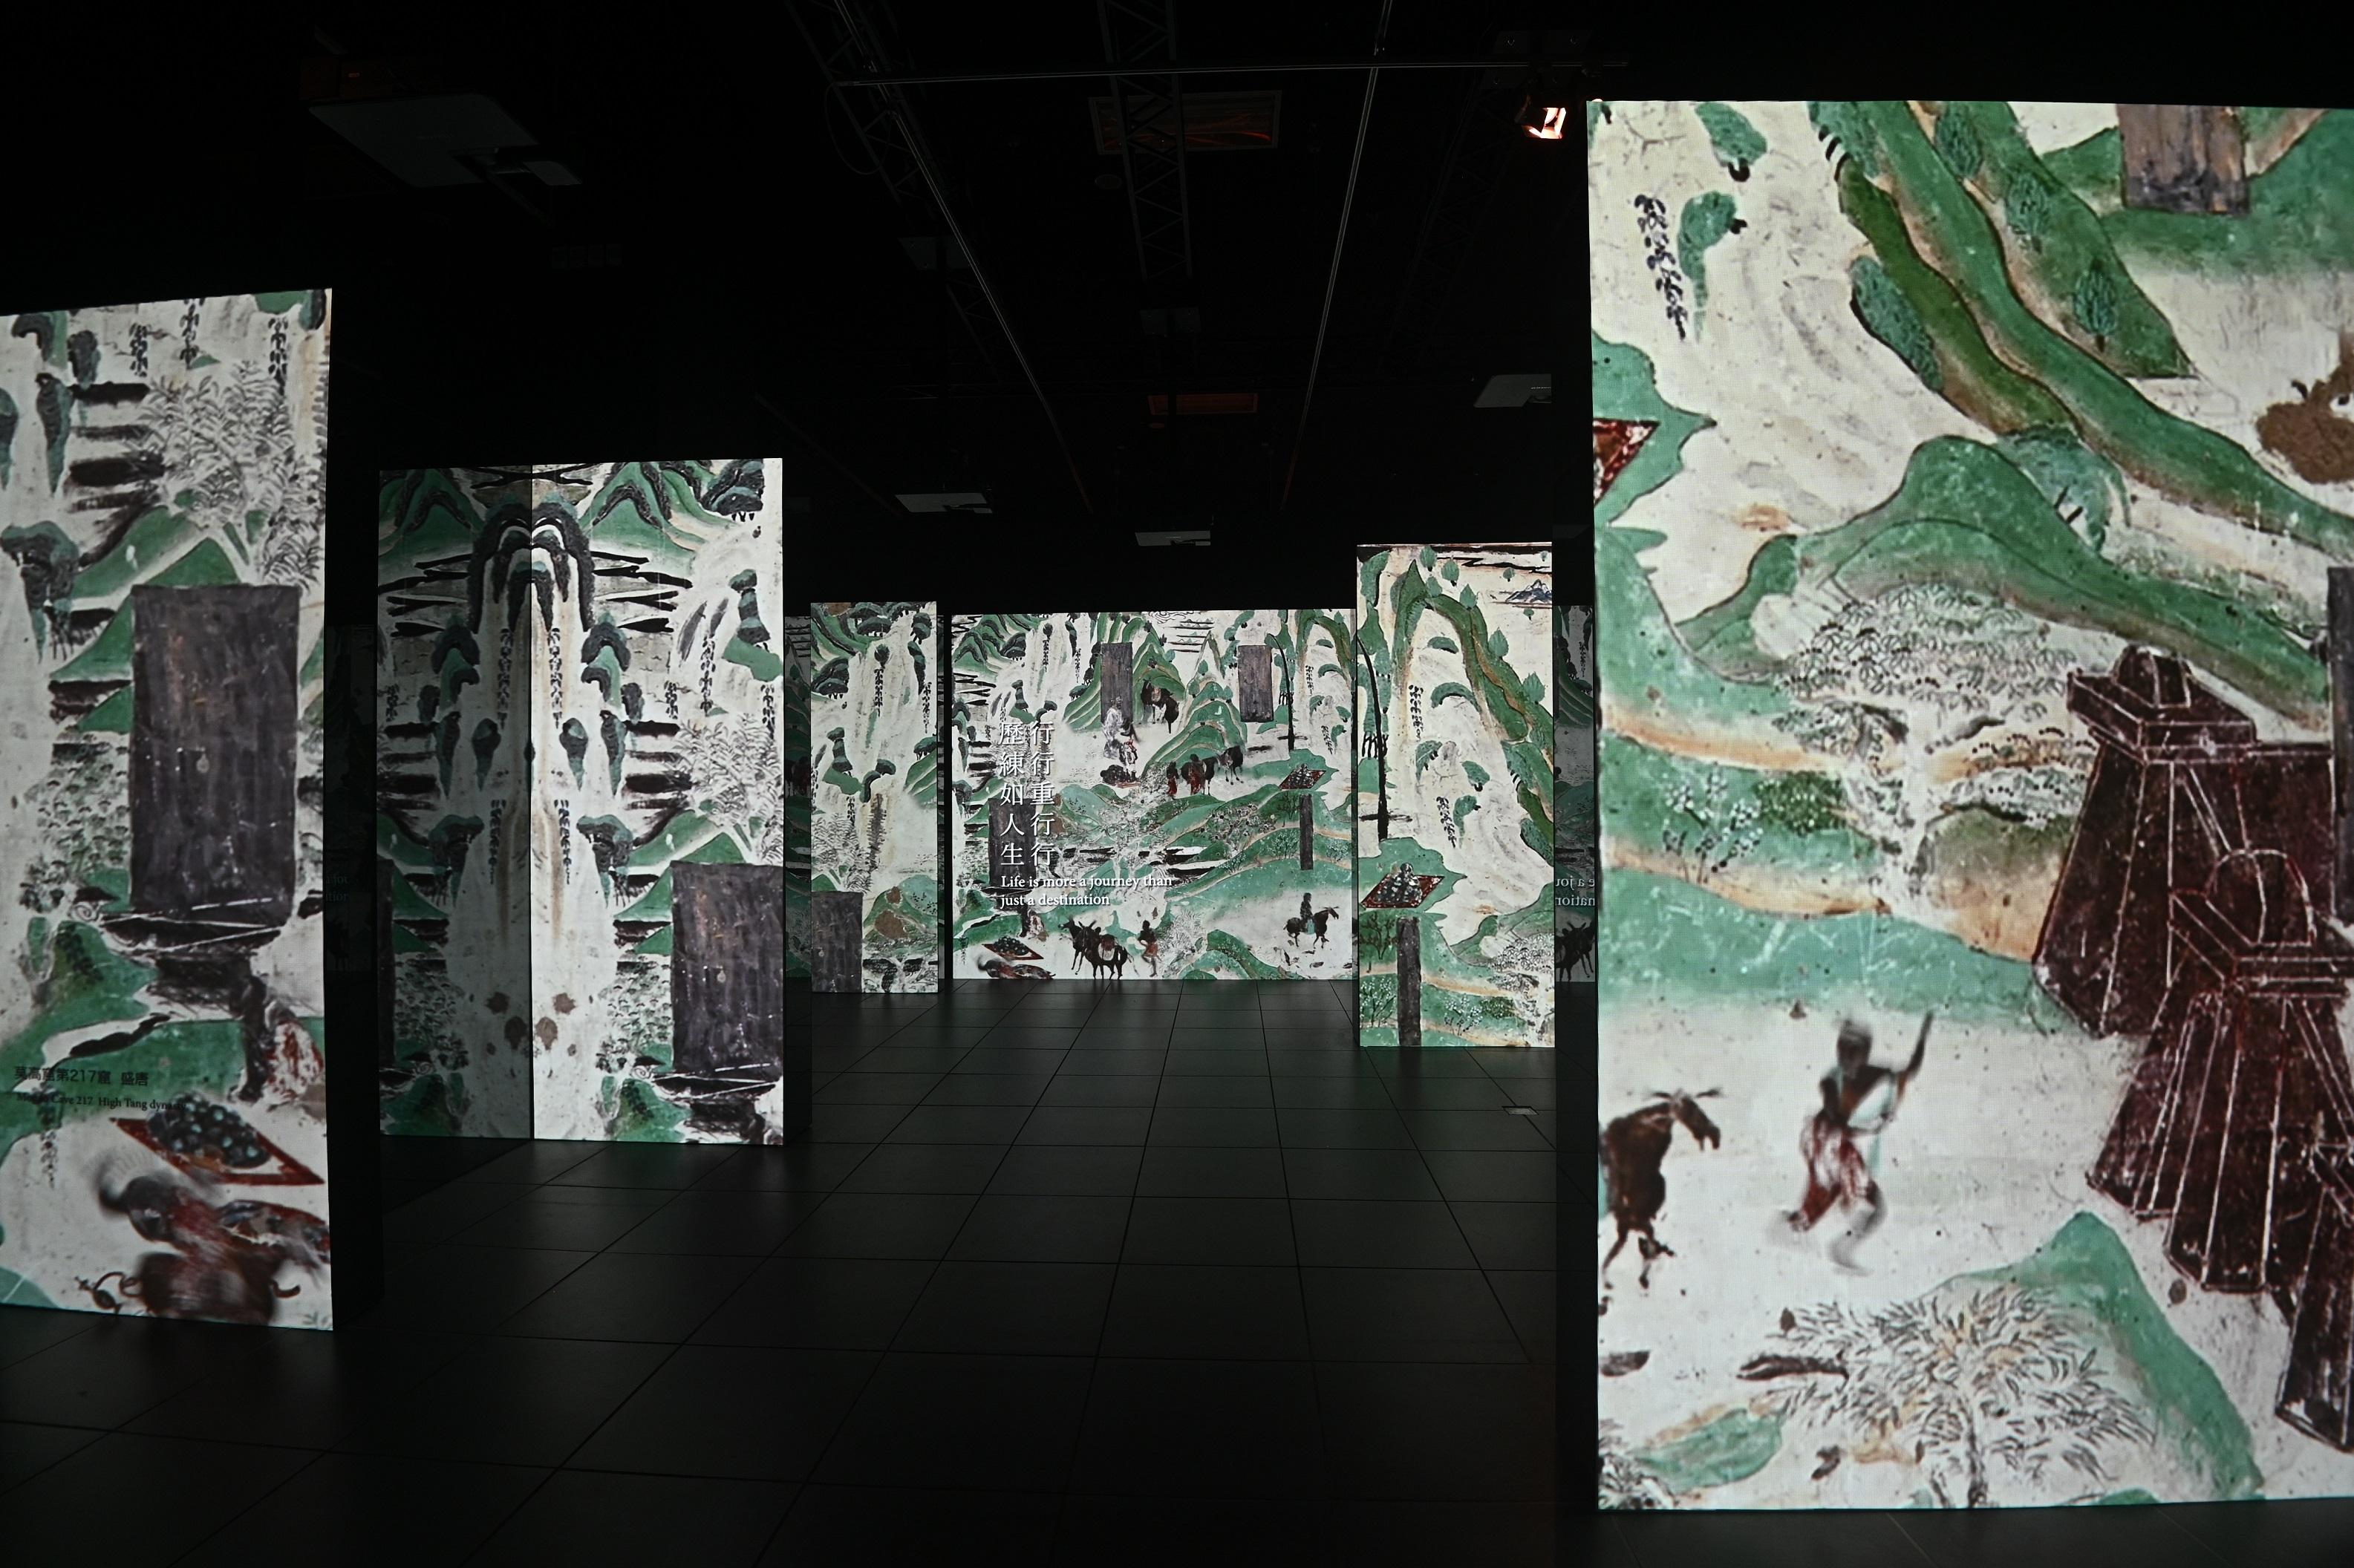 現正於香港文化博物館舉行的「香港賽馬會呈獻系列︰敦煌──千載情緣的故事」展覽將於十一月二十一日（星期一）結束，市民可把握機會前往參觀這個不容錯過的展覽。圖示以「山水之間」為題的數碼展示區，以美學角度剖析敦煌壁畫中山水之美及探討人與自然之間的連繫。

